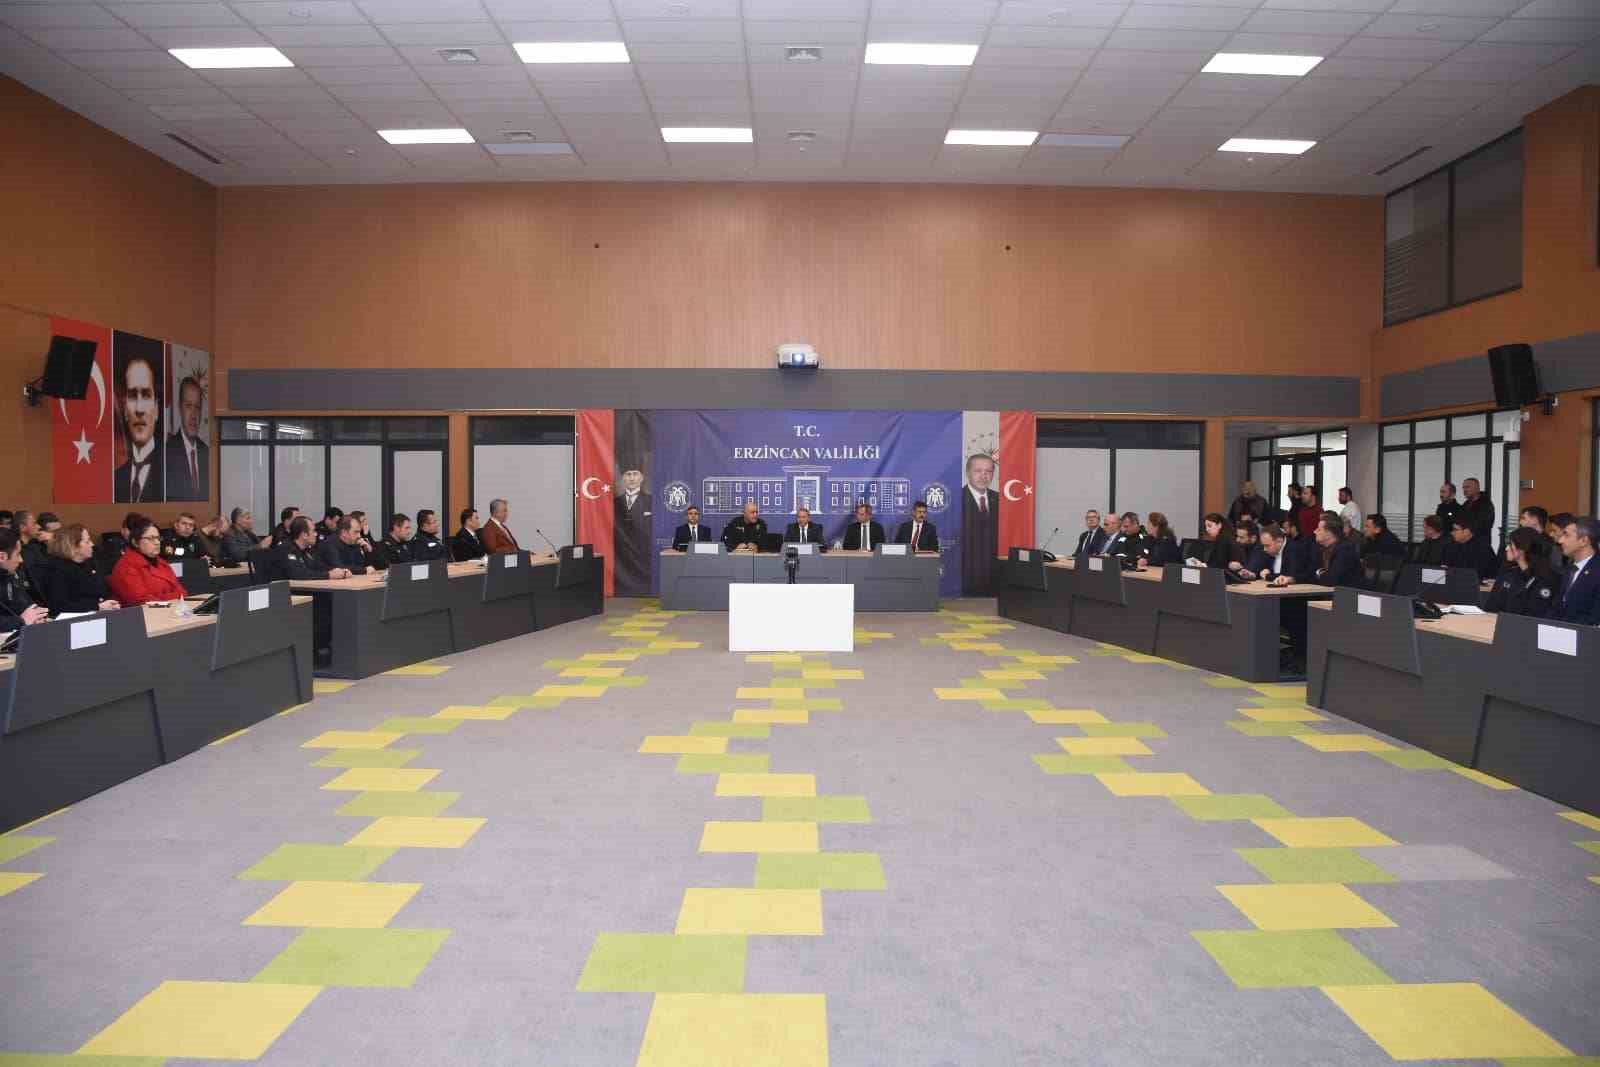 Erzincan’da ‘Seçim Güvenliği’ toplantısı gerçekleşti
